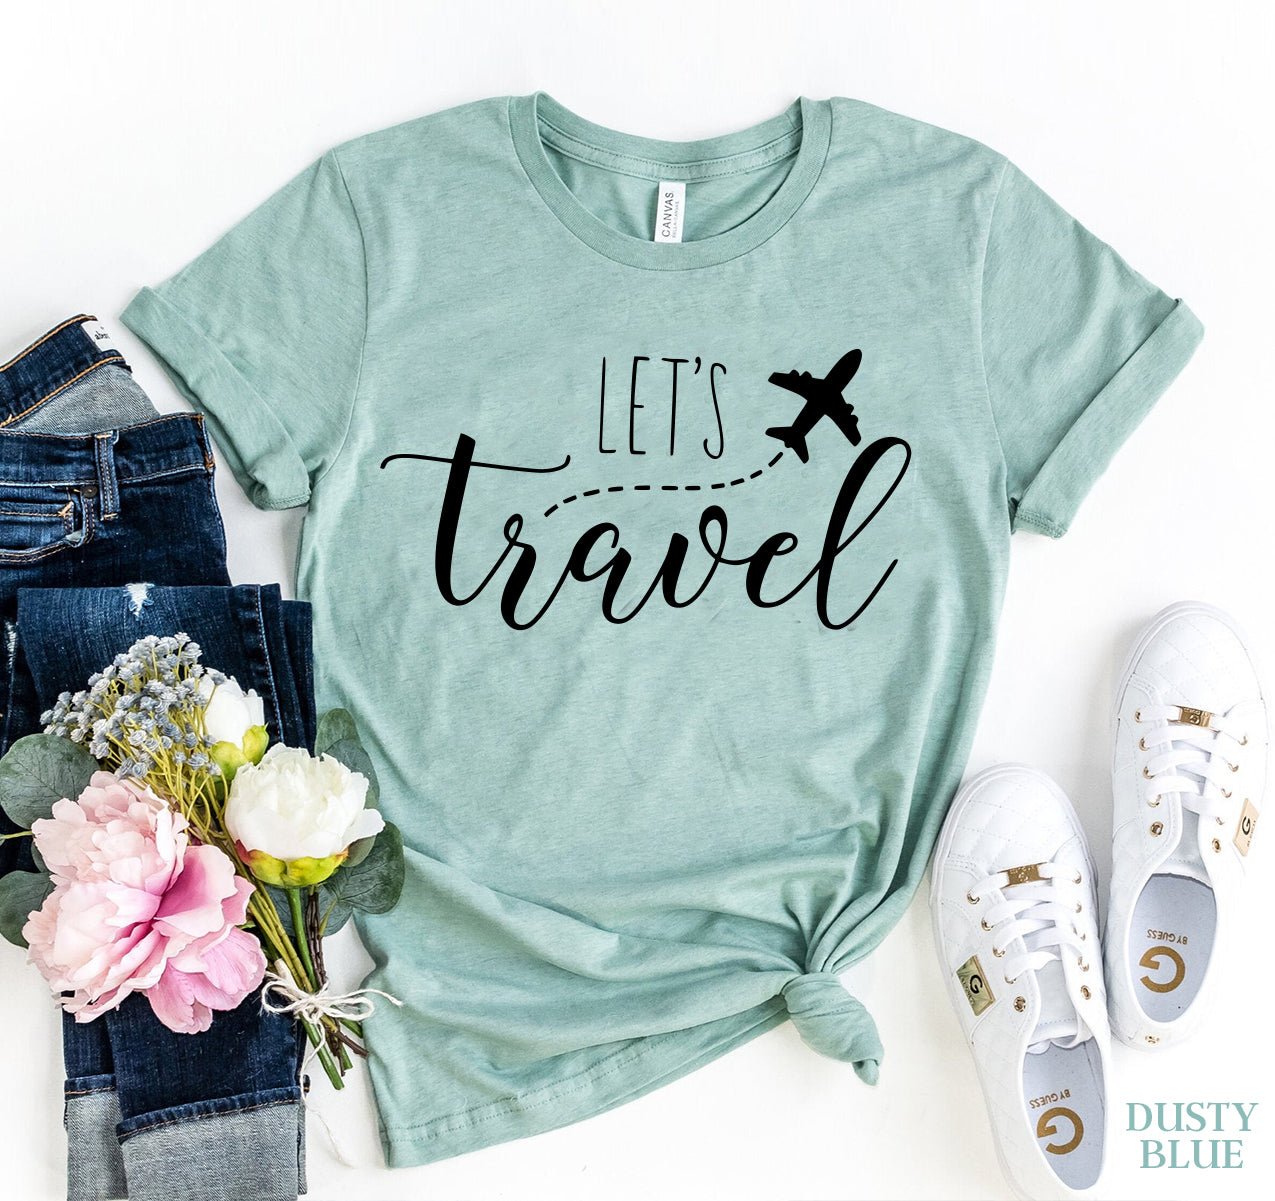 Let's Travel T-shirt - Kind Designs